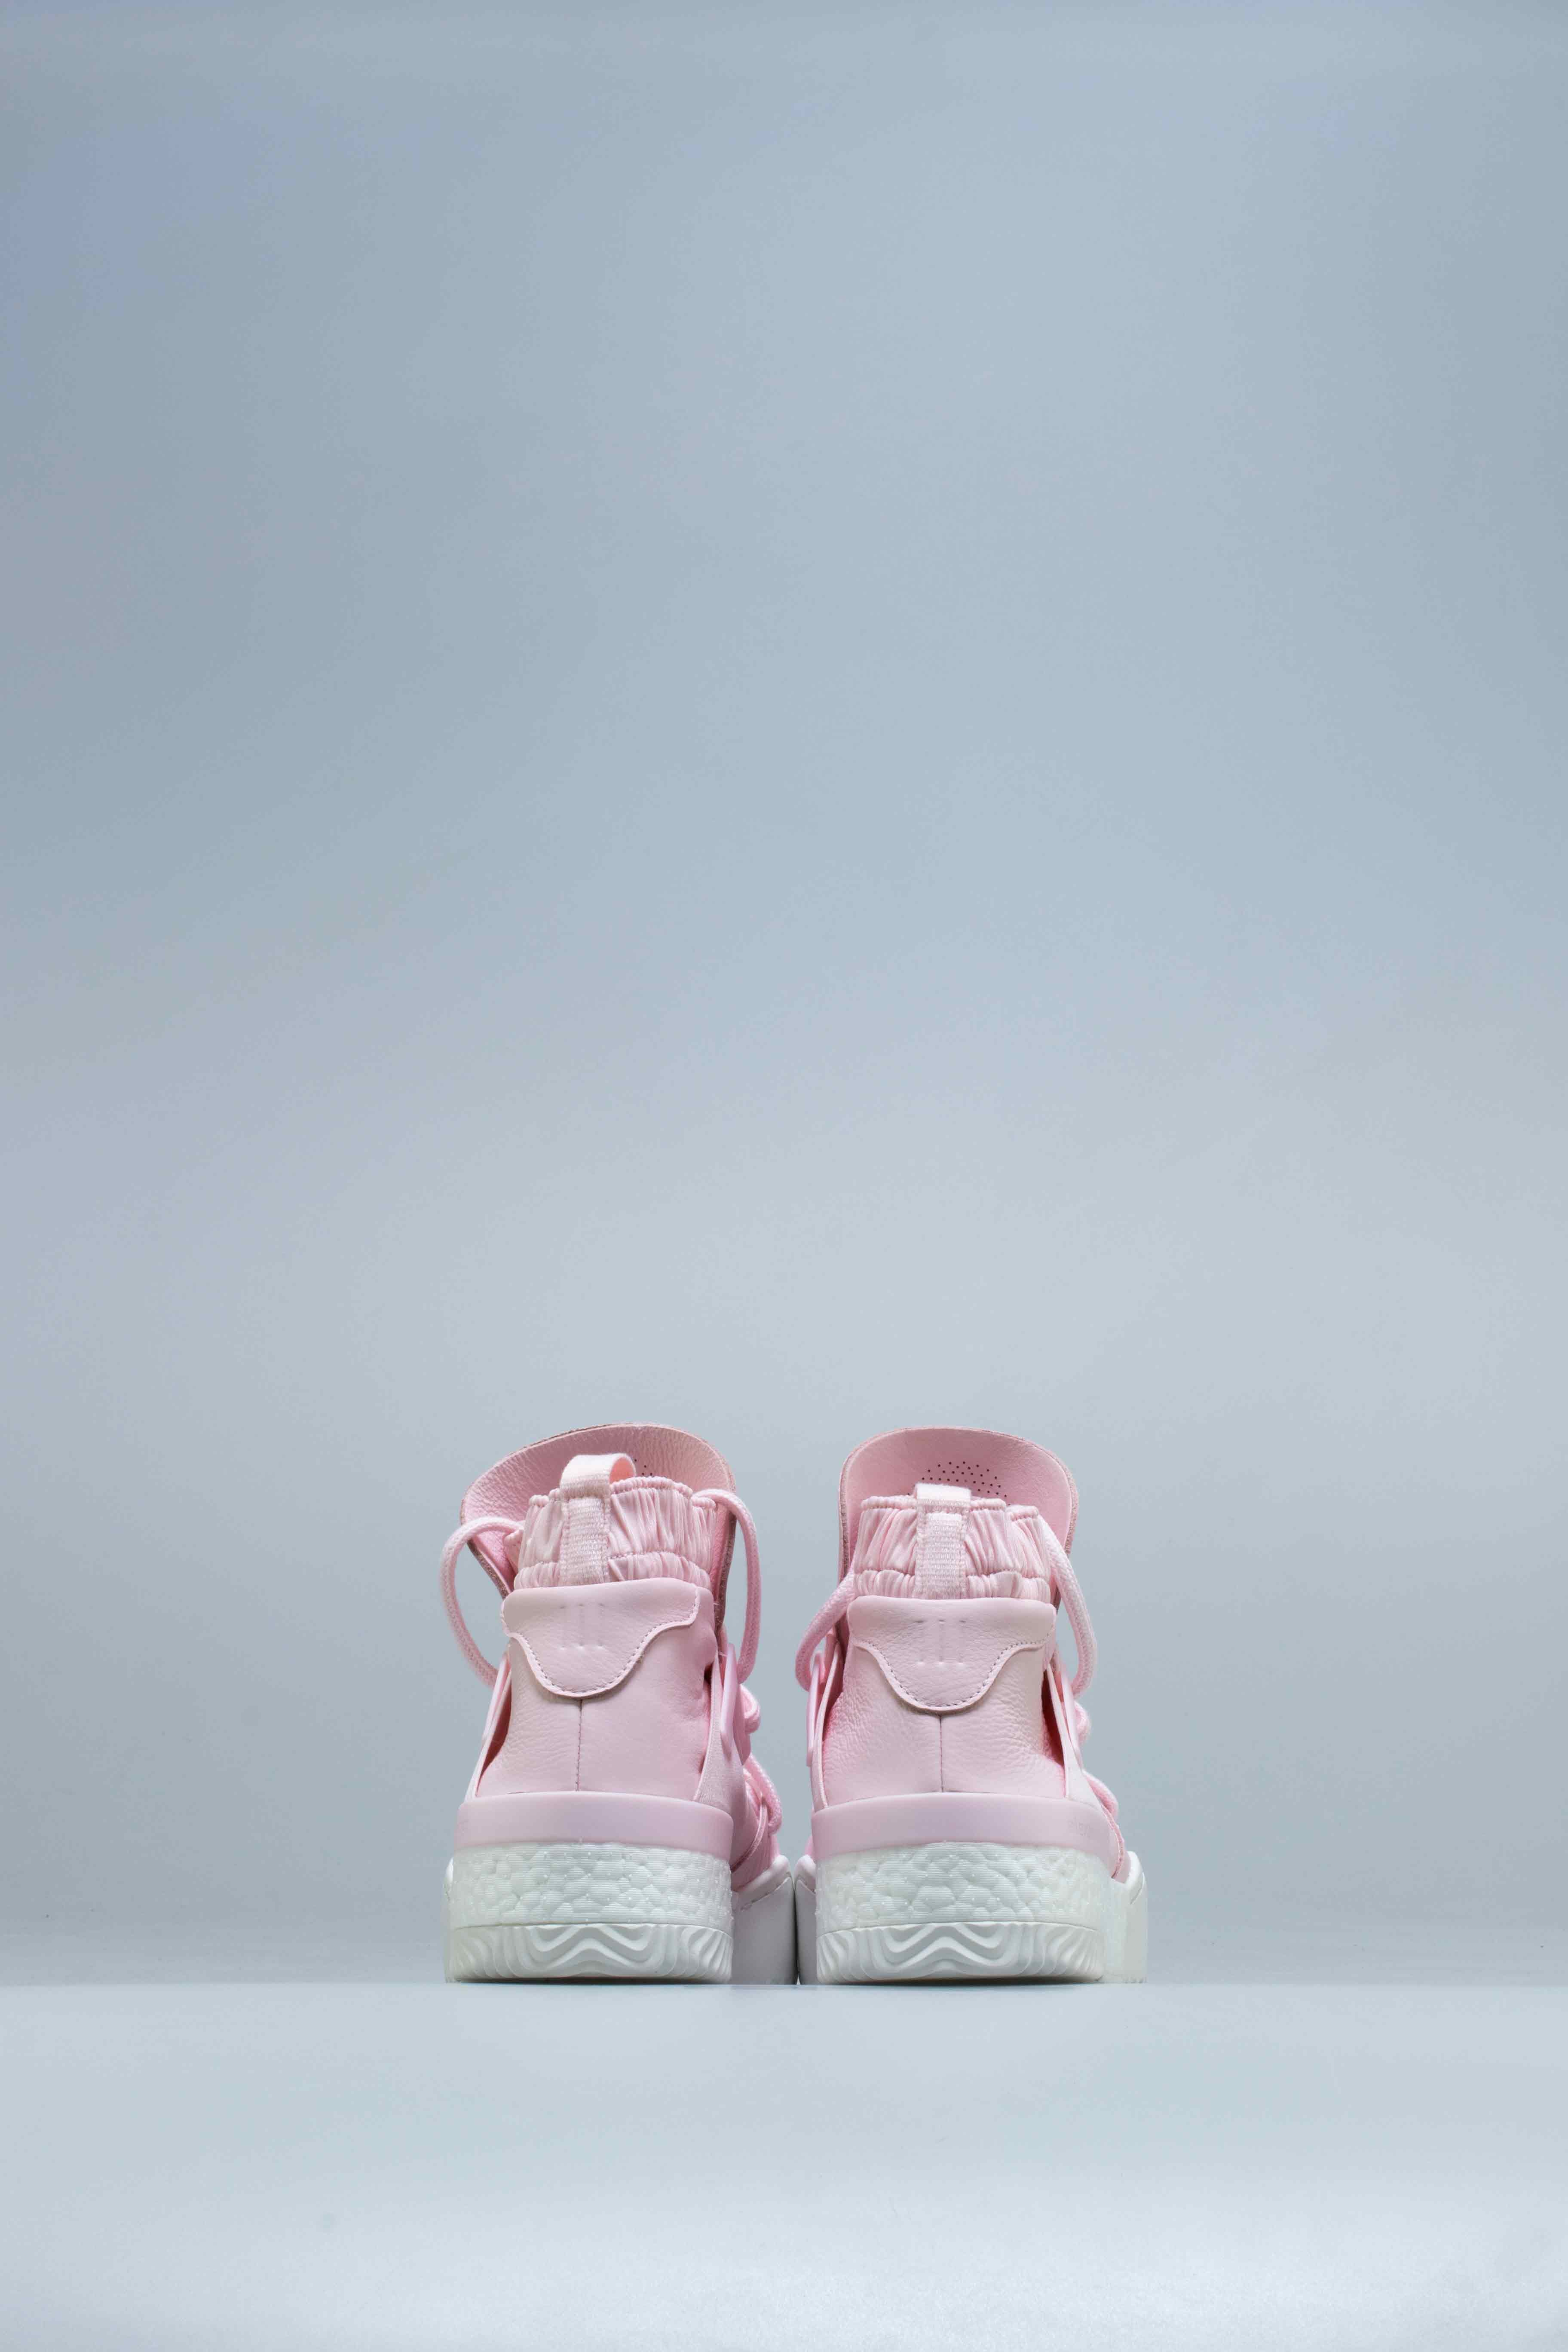 Adidas Consortium G28225 Alexander X Bball Mens Shoes Pink/White – ShopNiceKicks.com